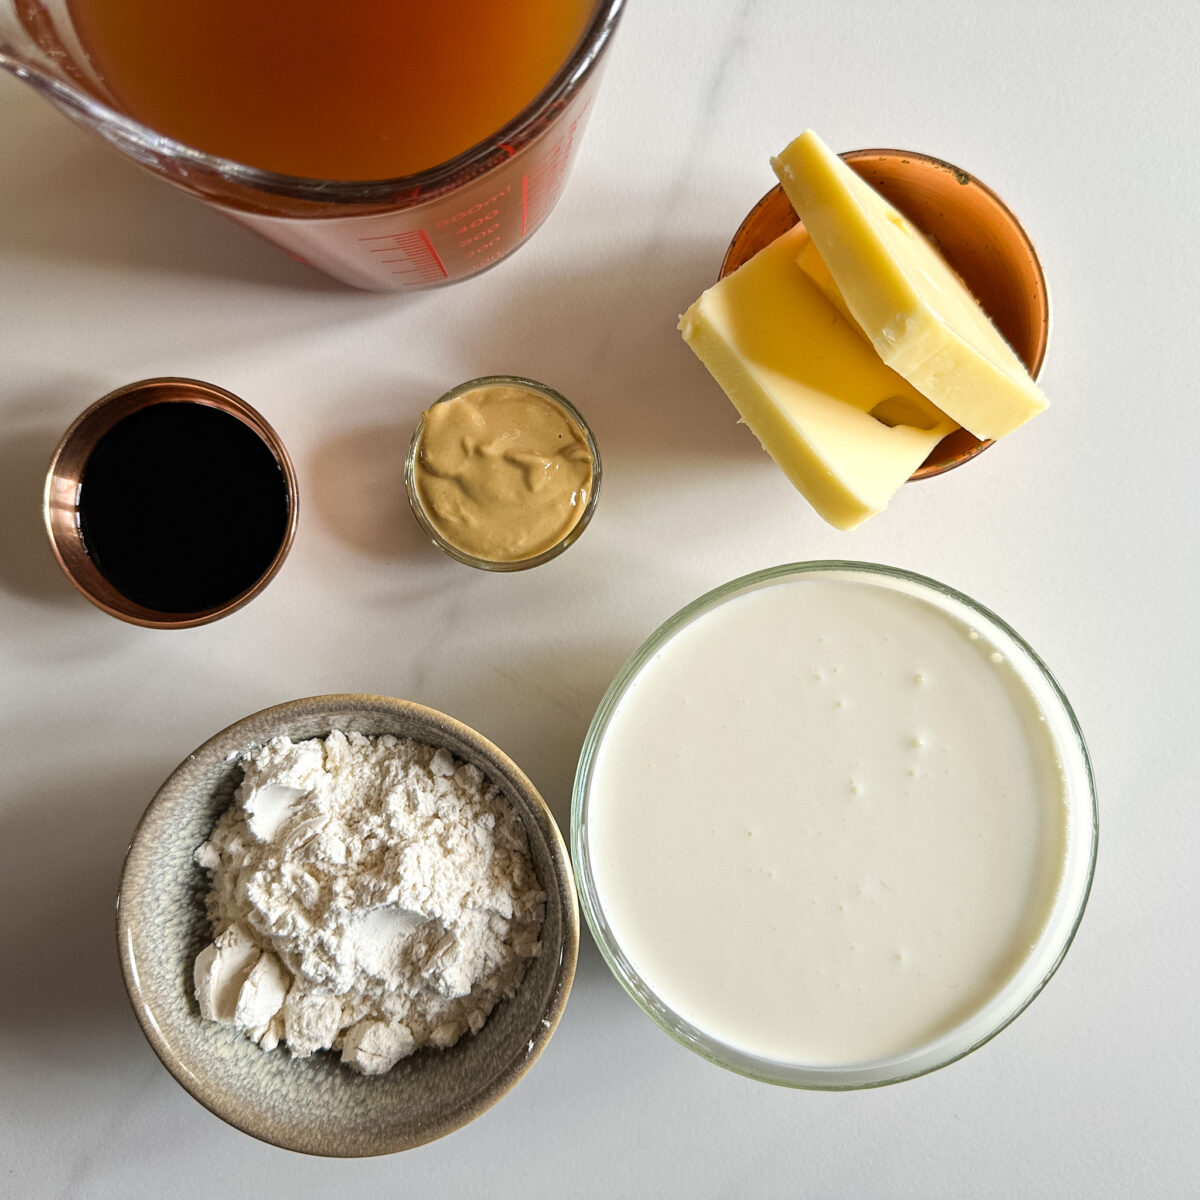 ingrédients pour sauce boulette ikea: bouillon, beurre, farine, crème, sauce soja, moutarde